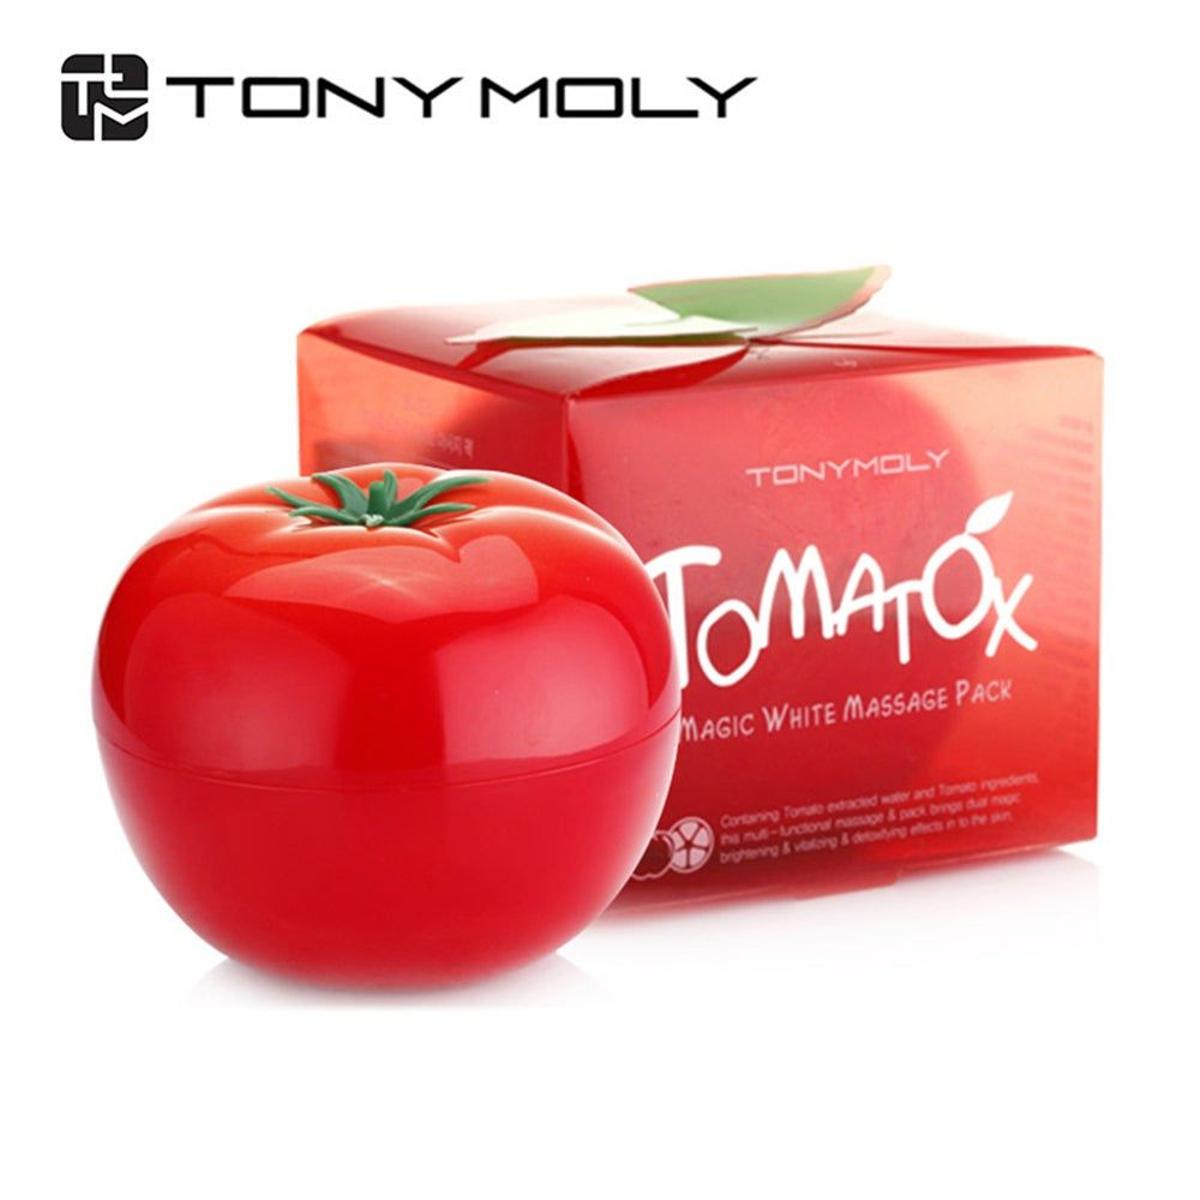 Tomatox de Tony Moly